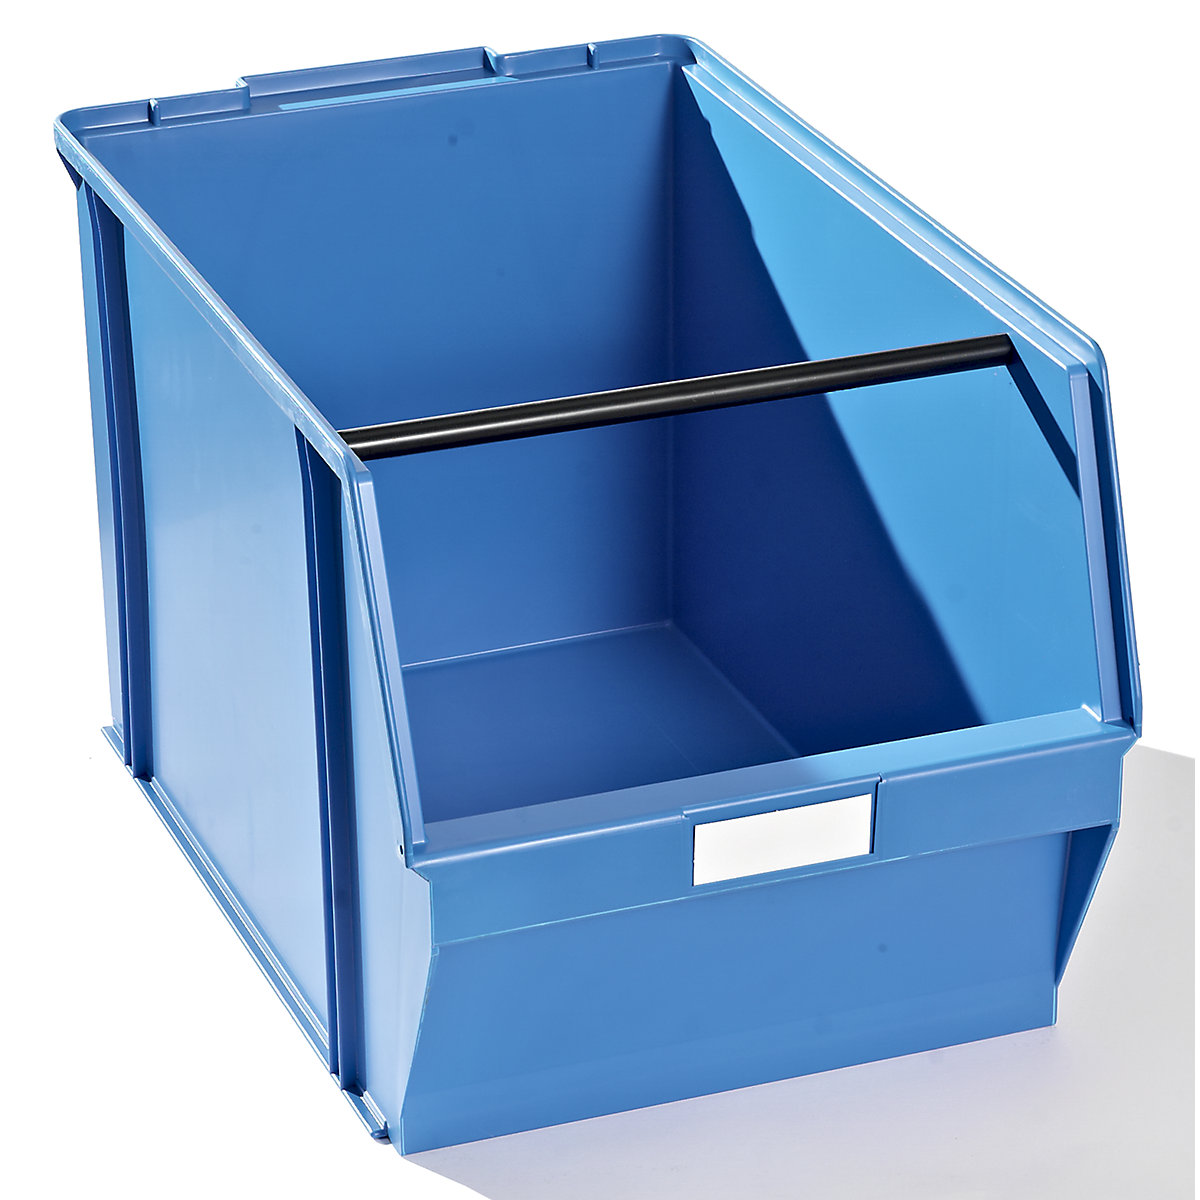 Caixa de armazenagem à vista em poliestireno, CxLxA 500 x 309 x 300 mm, embalagem de 2 unid., azul com barra de transporte-6